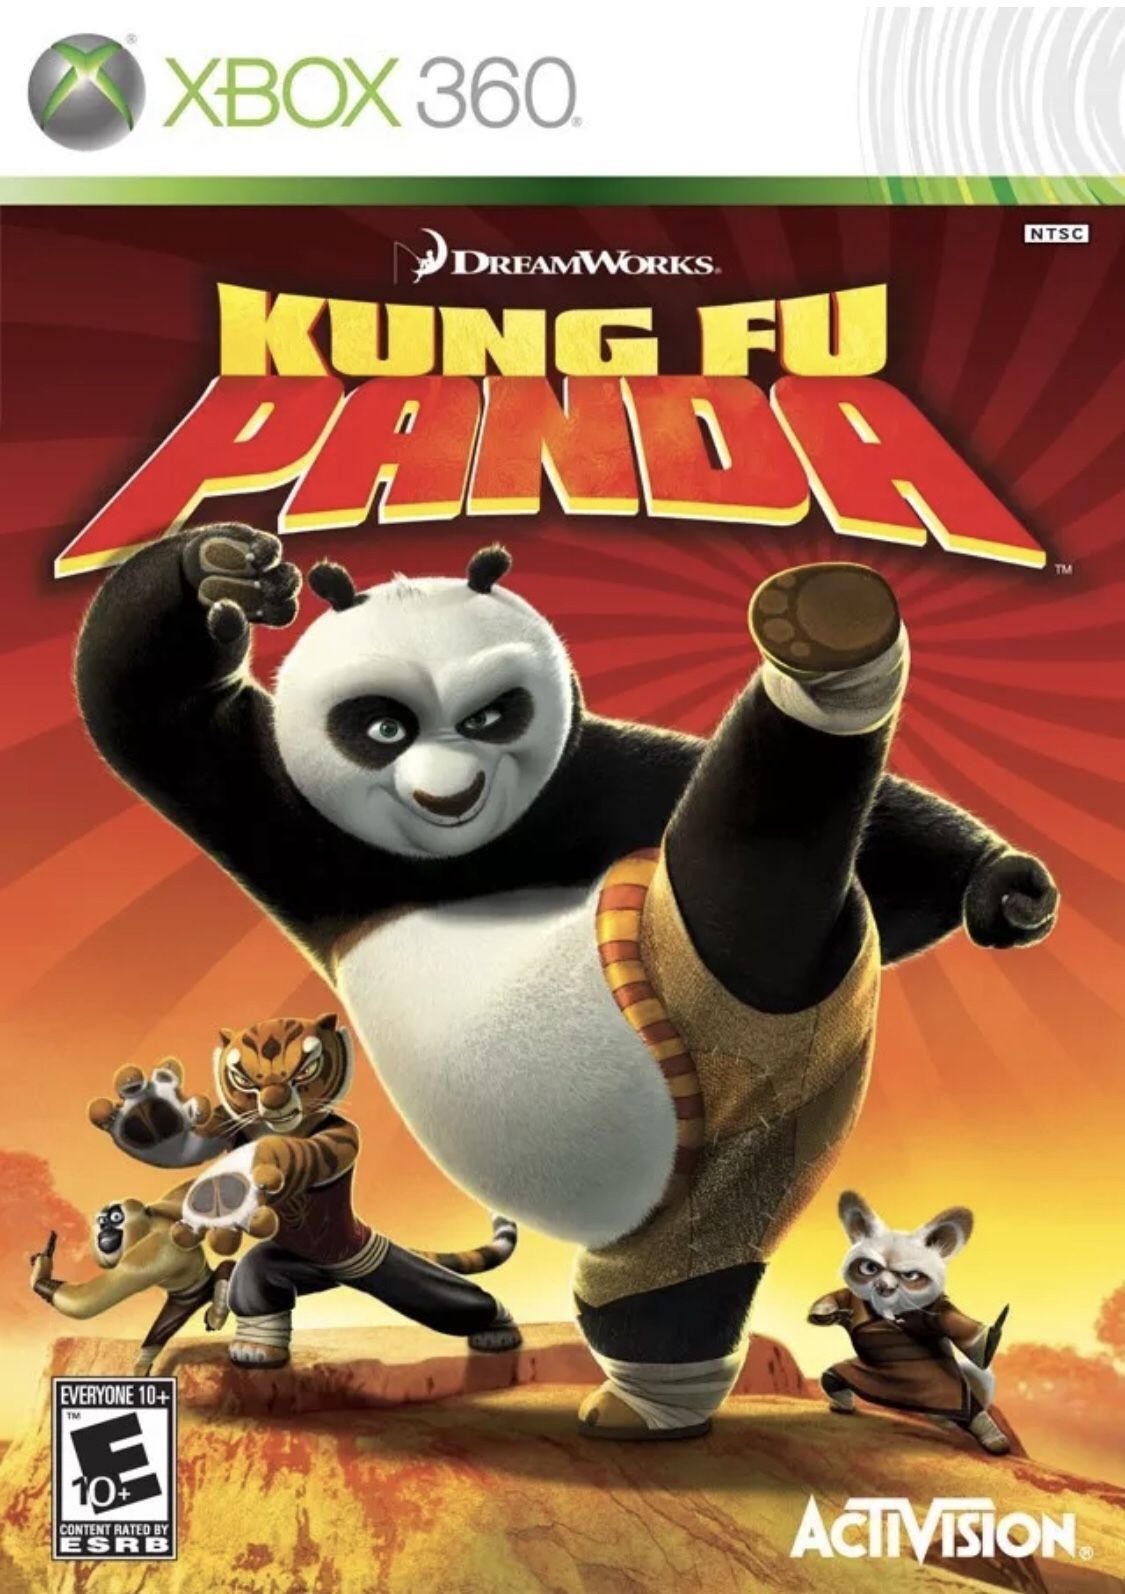 Xbox 360 Kung Fu Panda game